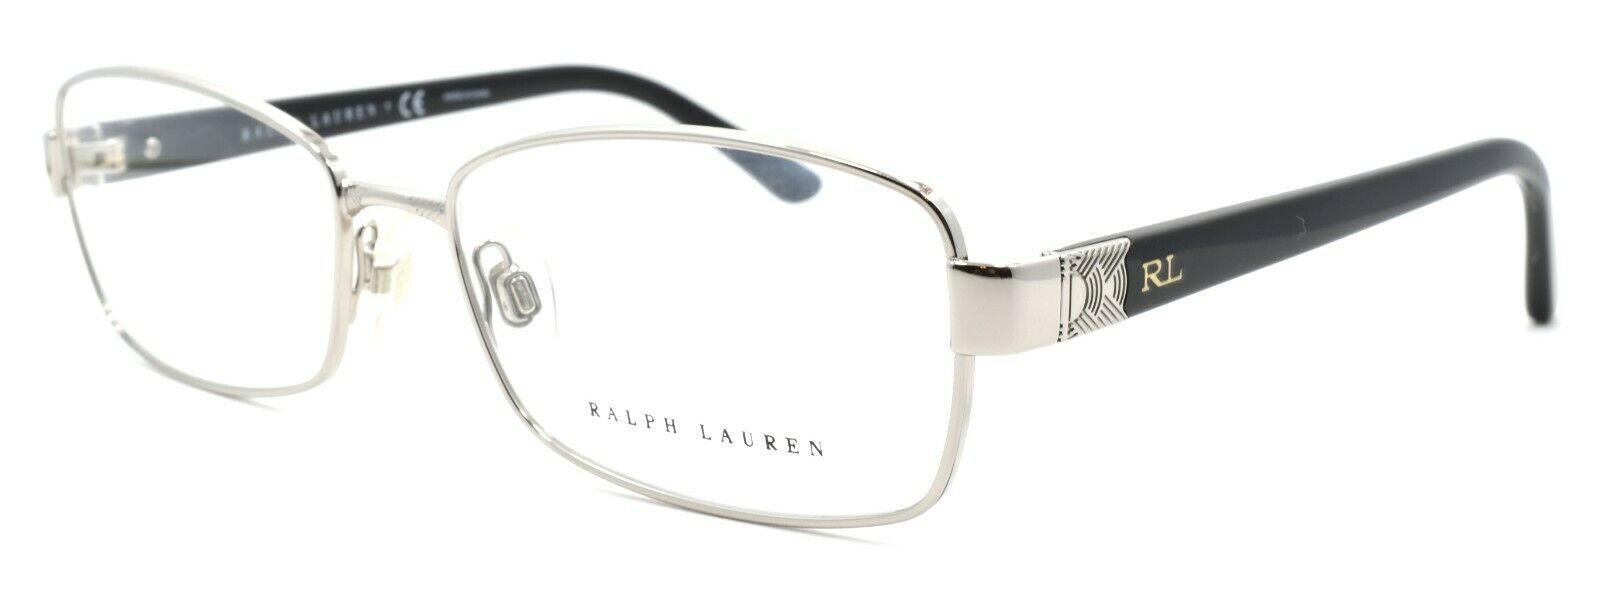 1-Ralph Lauren RL5079 9001 Women's Eyeglasses Frames 54-16-135 Silver-8053672067804-IKSpecs